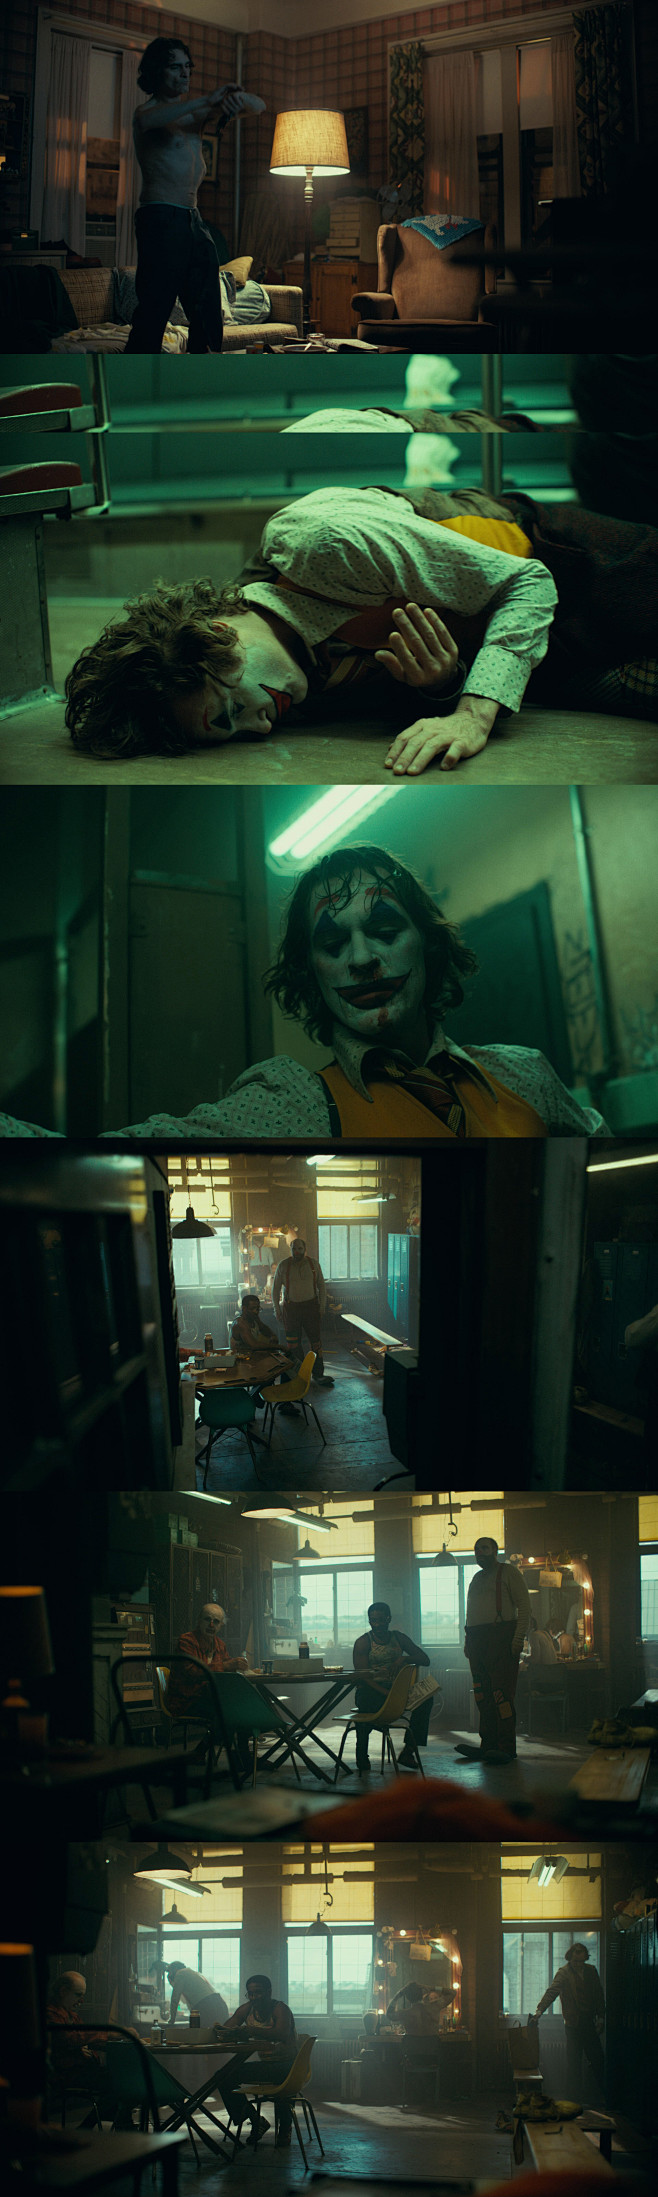 #电影截图#小丑 Joker